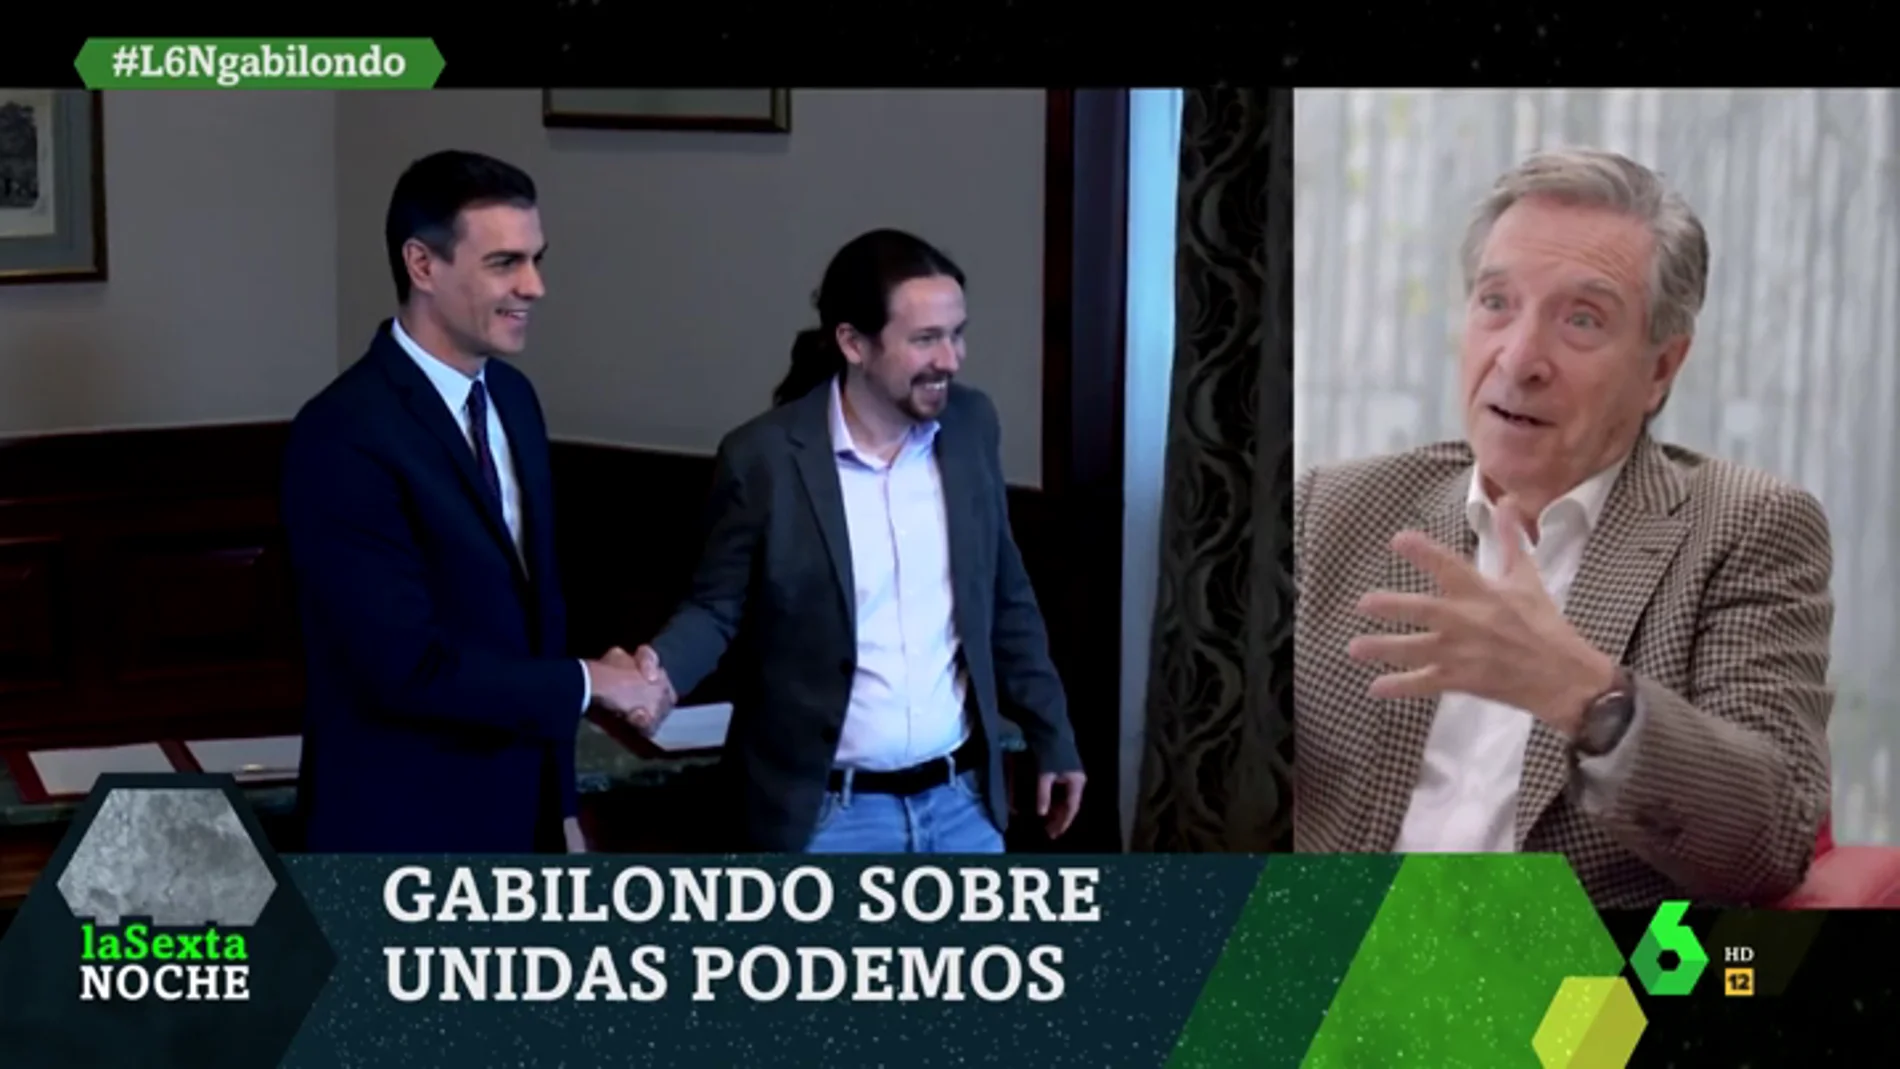 Iñaki Gabilondo: "Celebro que Podemos esté mostrando solidez, madurez y responsabilidad, pero no entiendo muchas cosas"